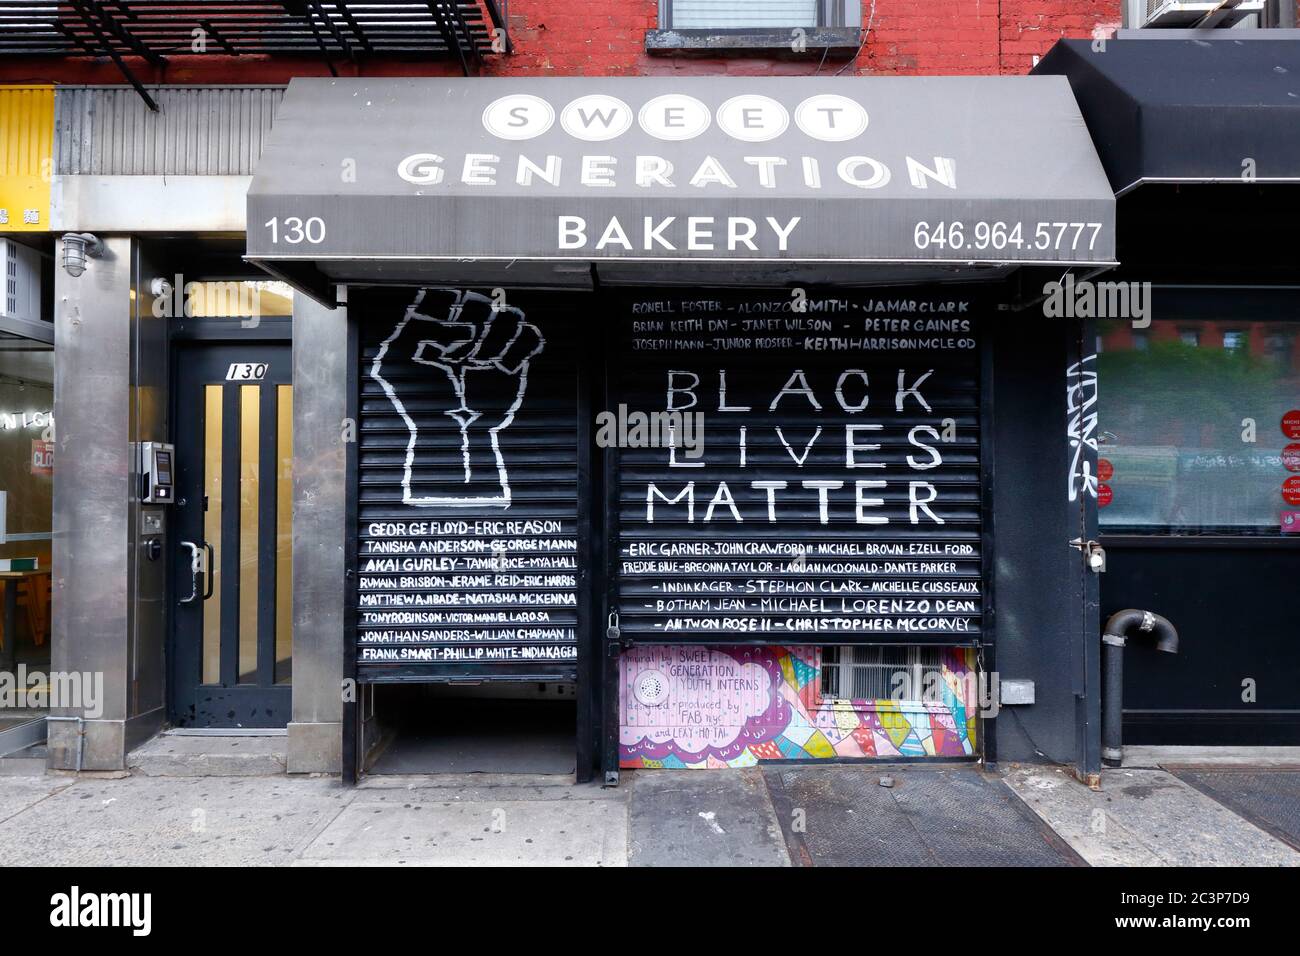 Ein Wandgemälde von Black Lives Matter, gemalt auf dem Rolltor der Sweet Generation Bäckerei im East Village Viertel von Manhattan in New York City Stockfoto